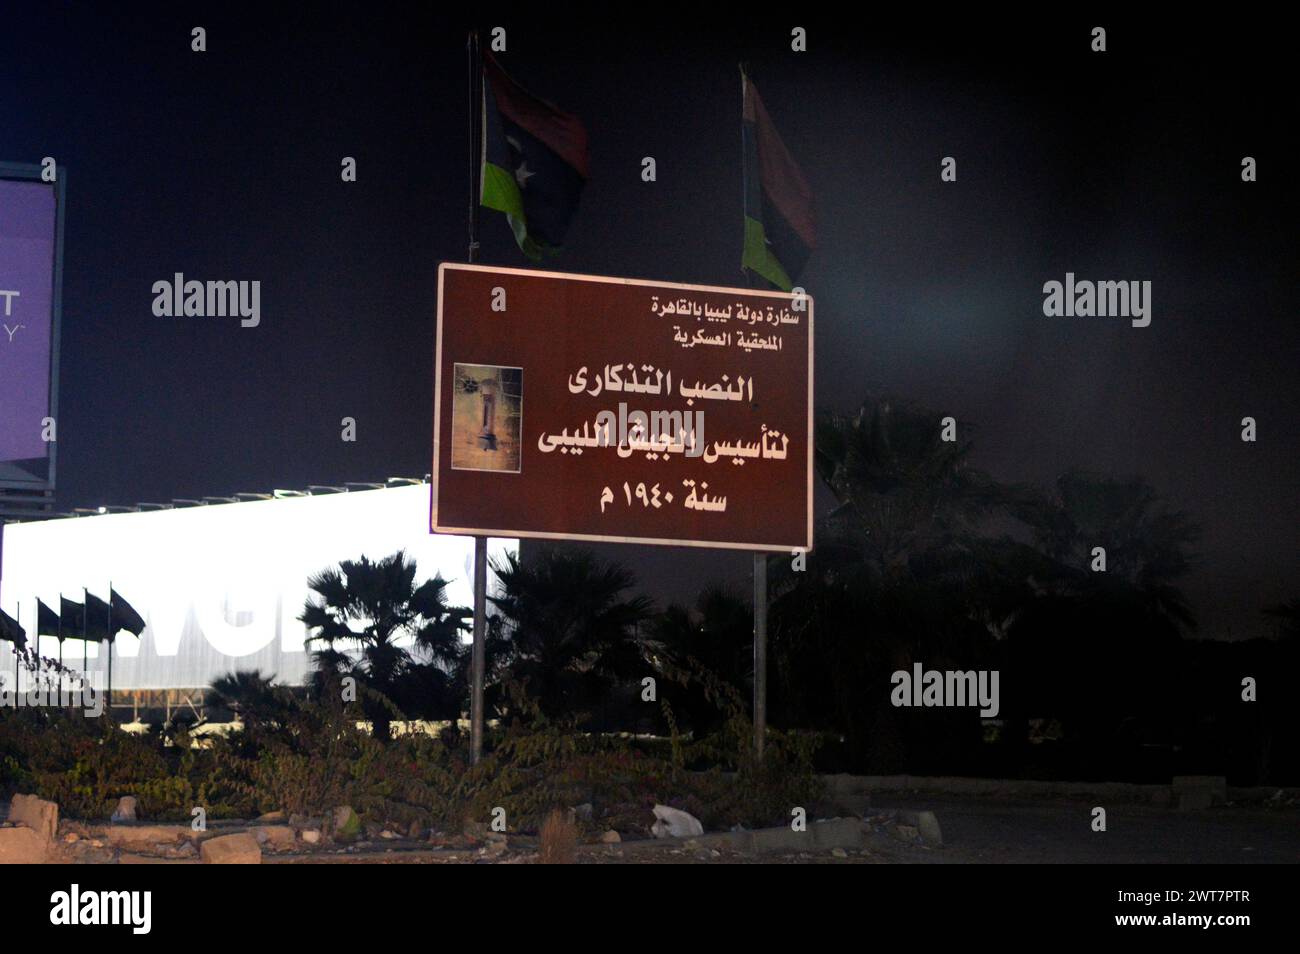 Giza, Egitto, 15 marzo 2024: Il monumento alla fondazione dell'esercito libico 1940 nella città di Giza in Egitto di notte, monumento alla fondazione dell'ar militare Foto Stock